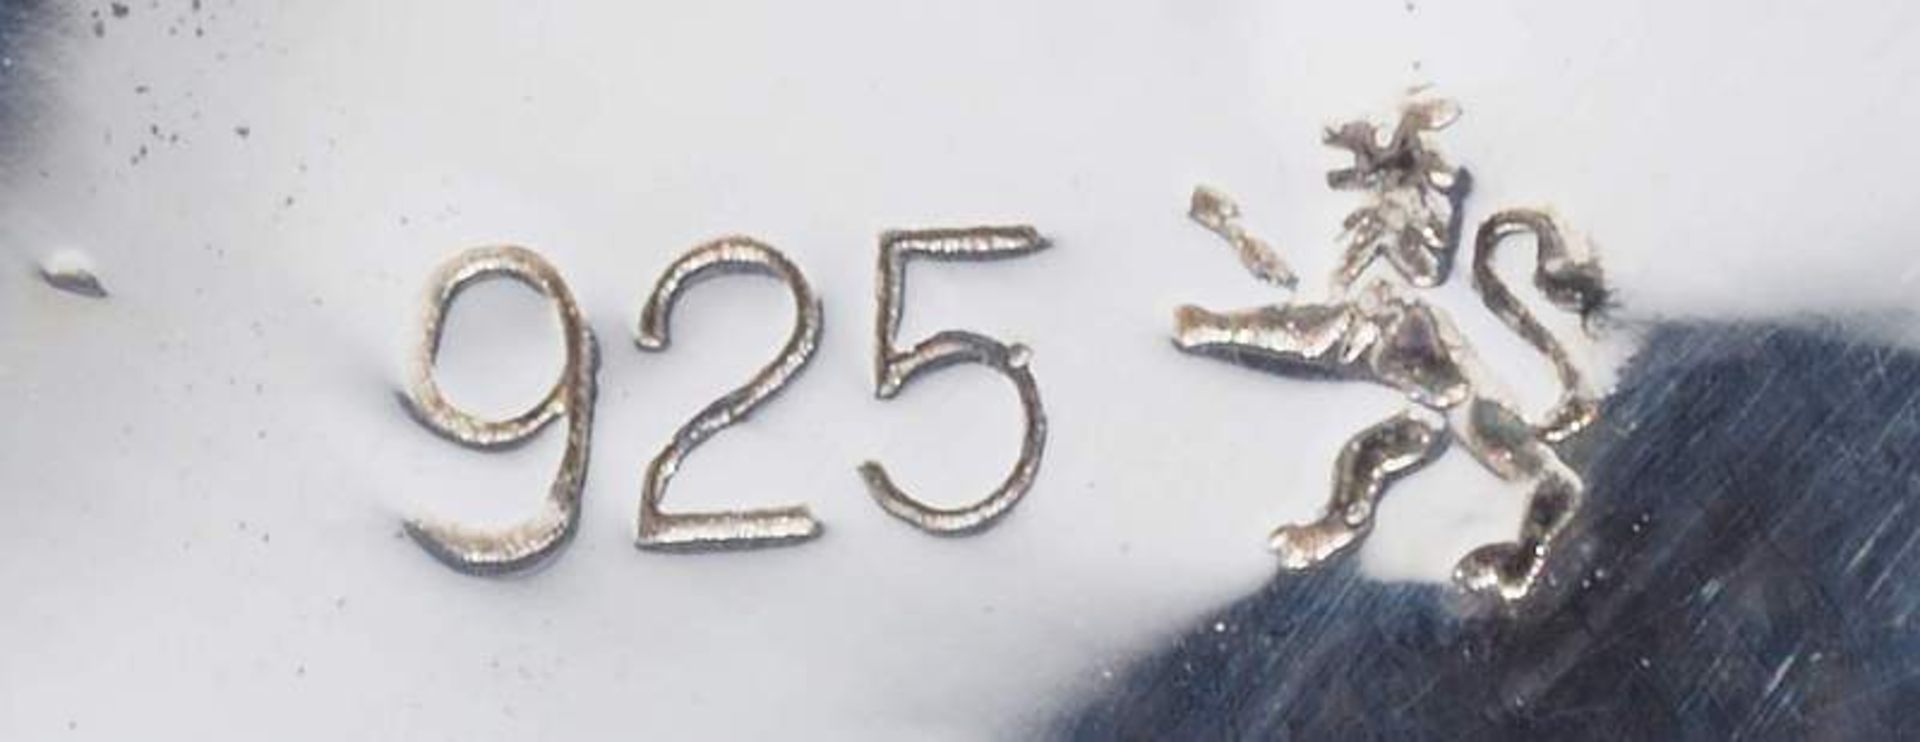 Miniatur-Gewürzstreuer, 925er Silber. Miniatur-Gewürzstreuer, 925er Silber. Insgesamt 15 Stück. - Image 6 of 6